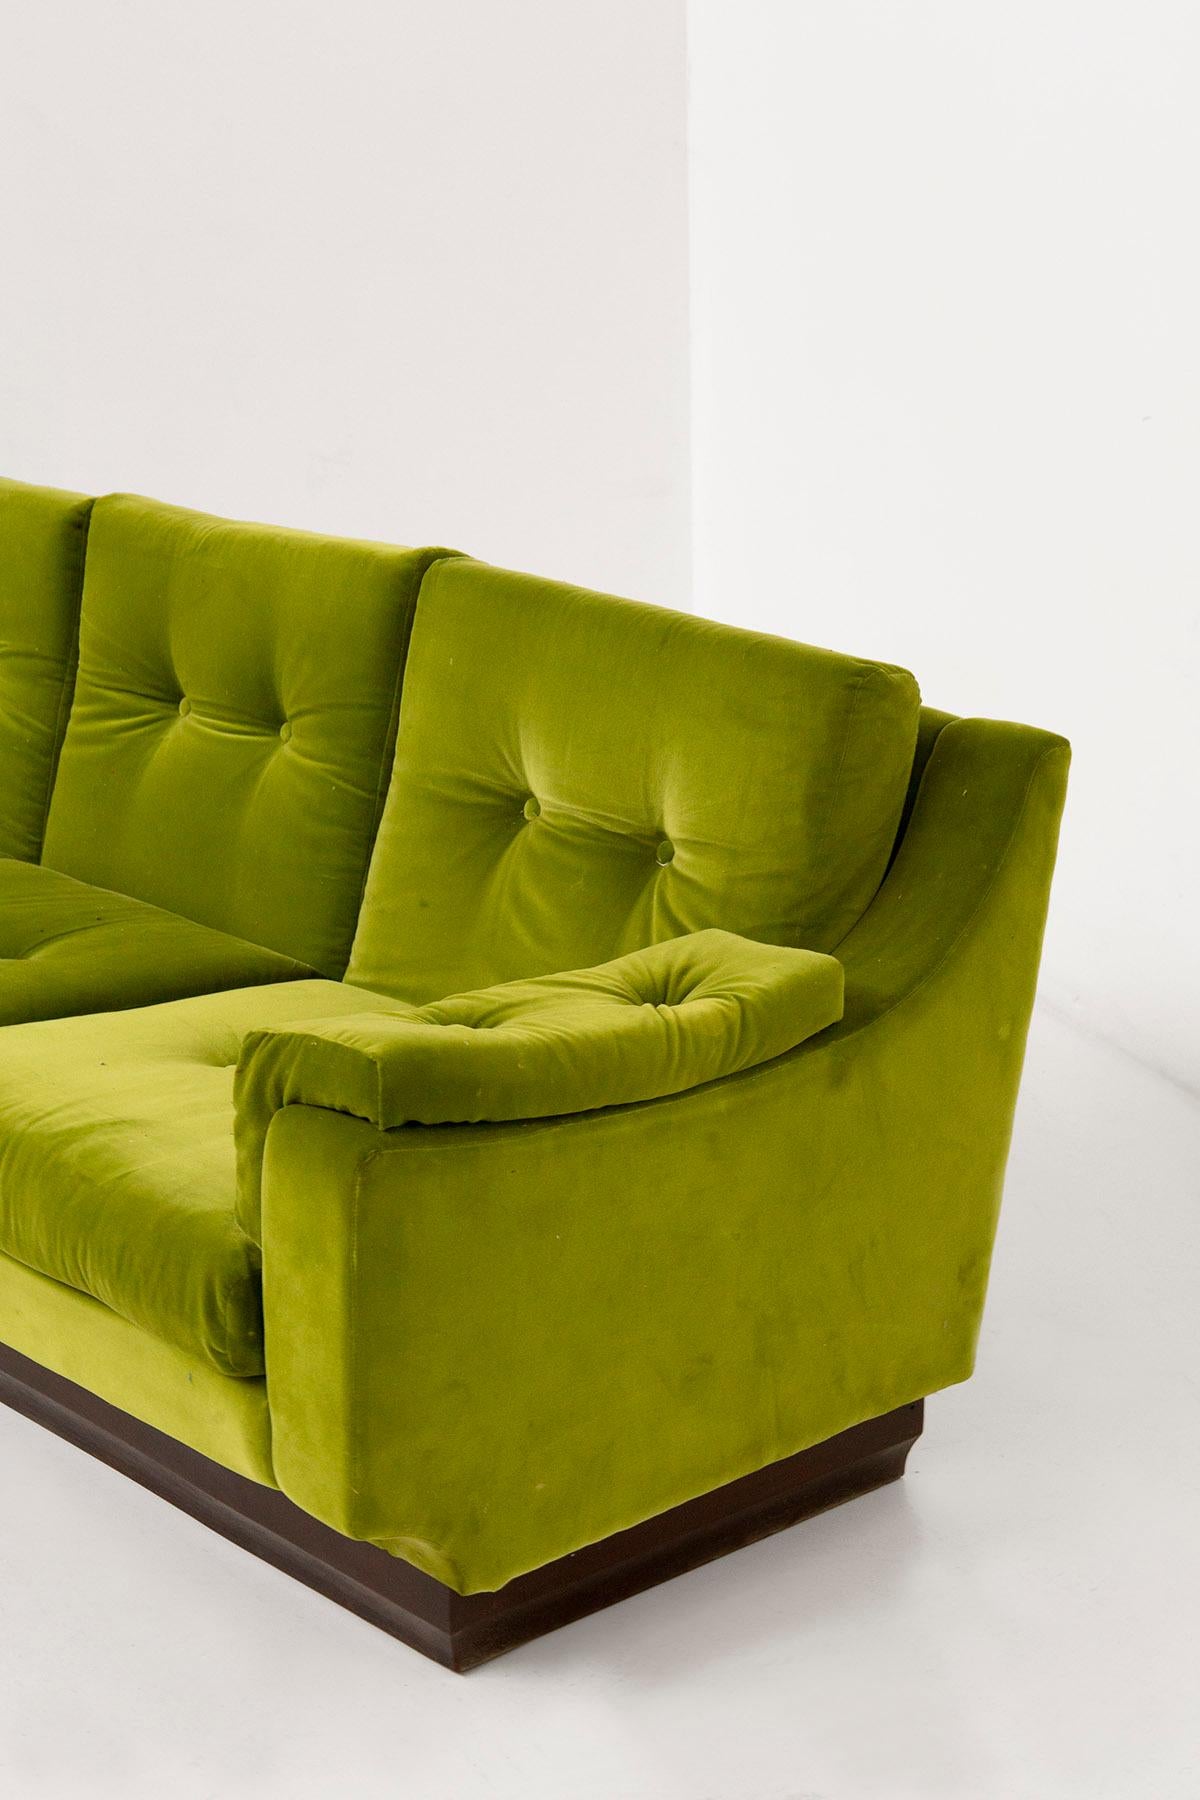 Mid-Century Modern Italian Sofa in Green Velvet and Wood For Sale